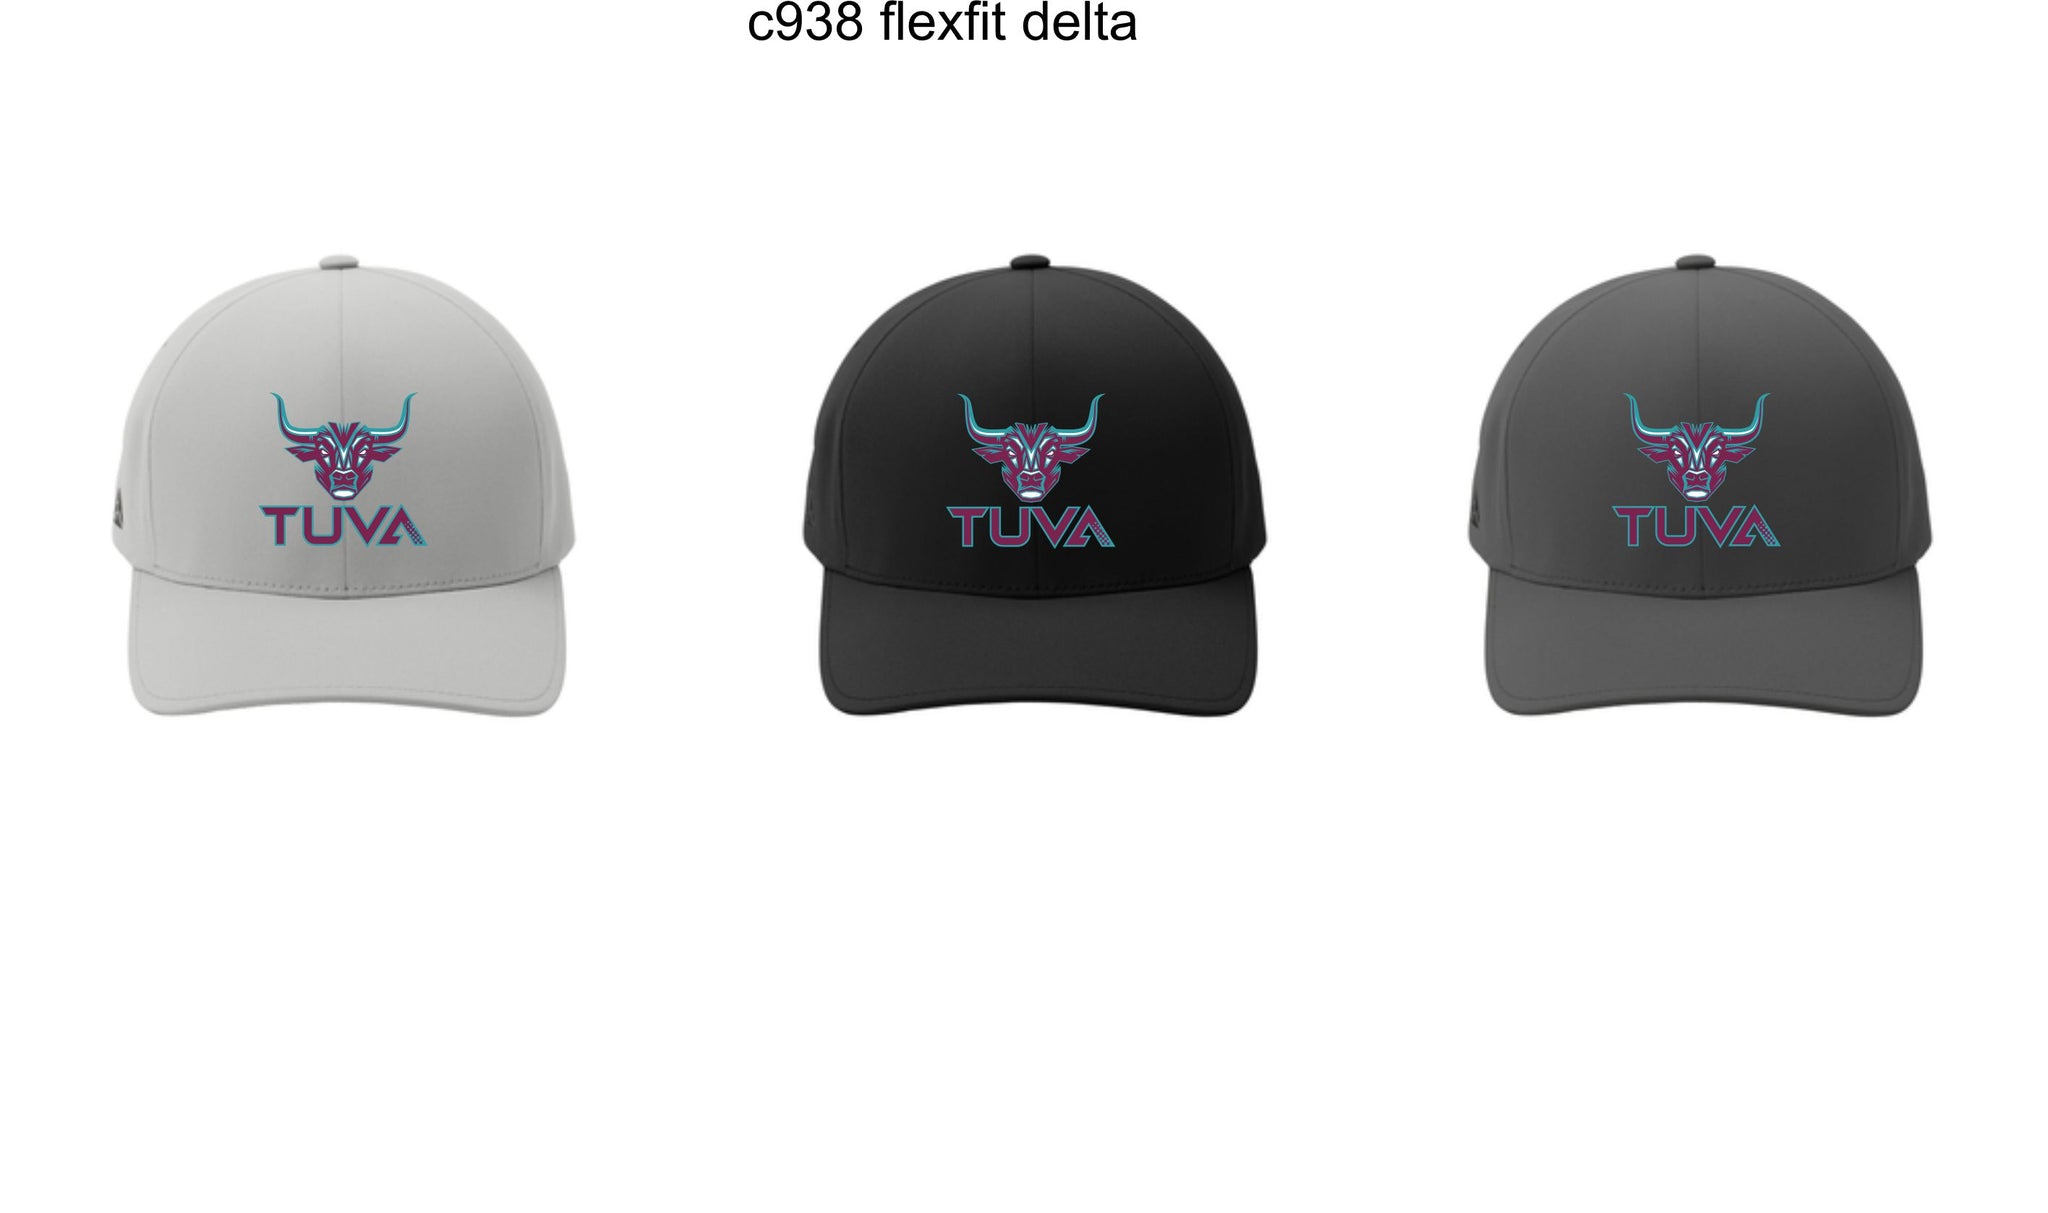 TUVA - Flex-fit Hats